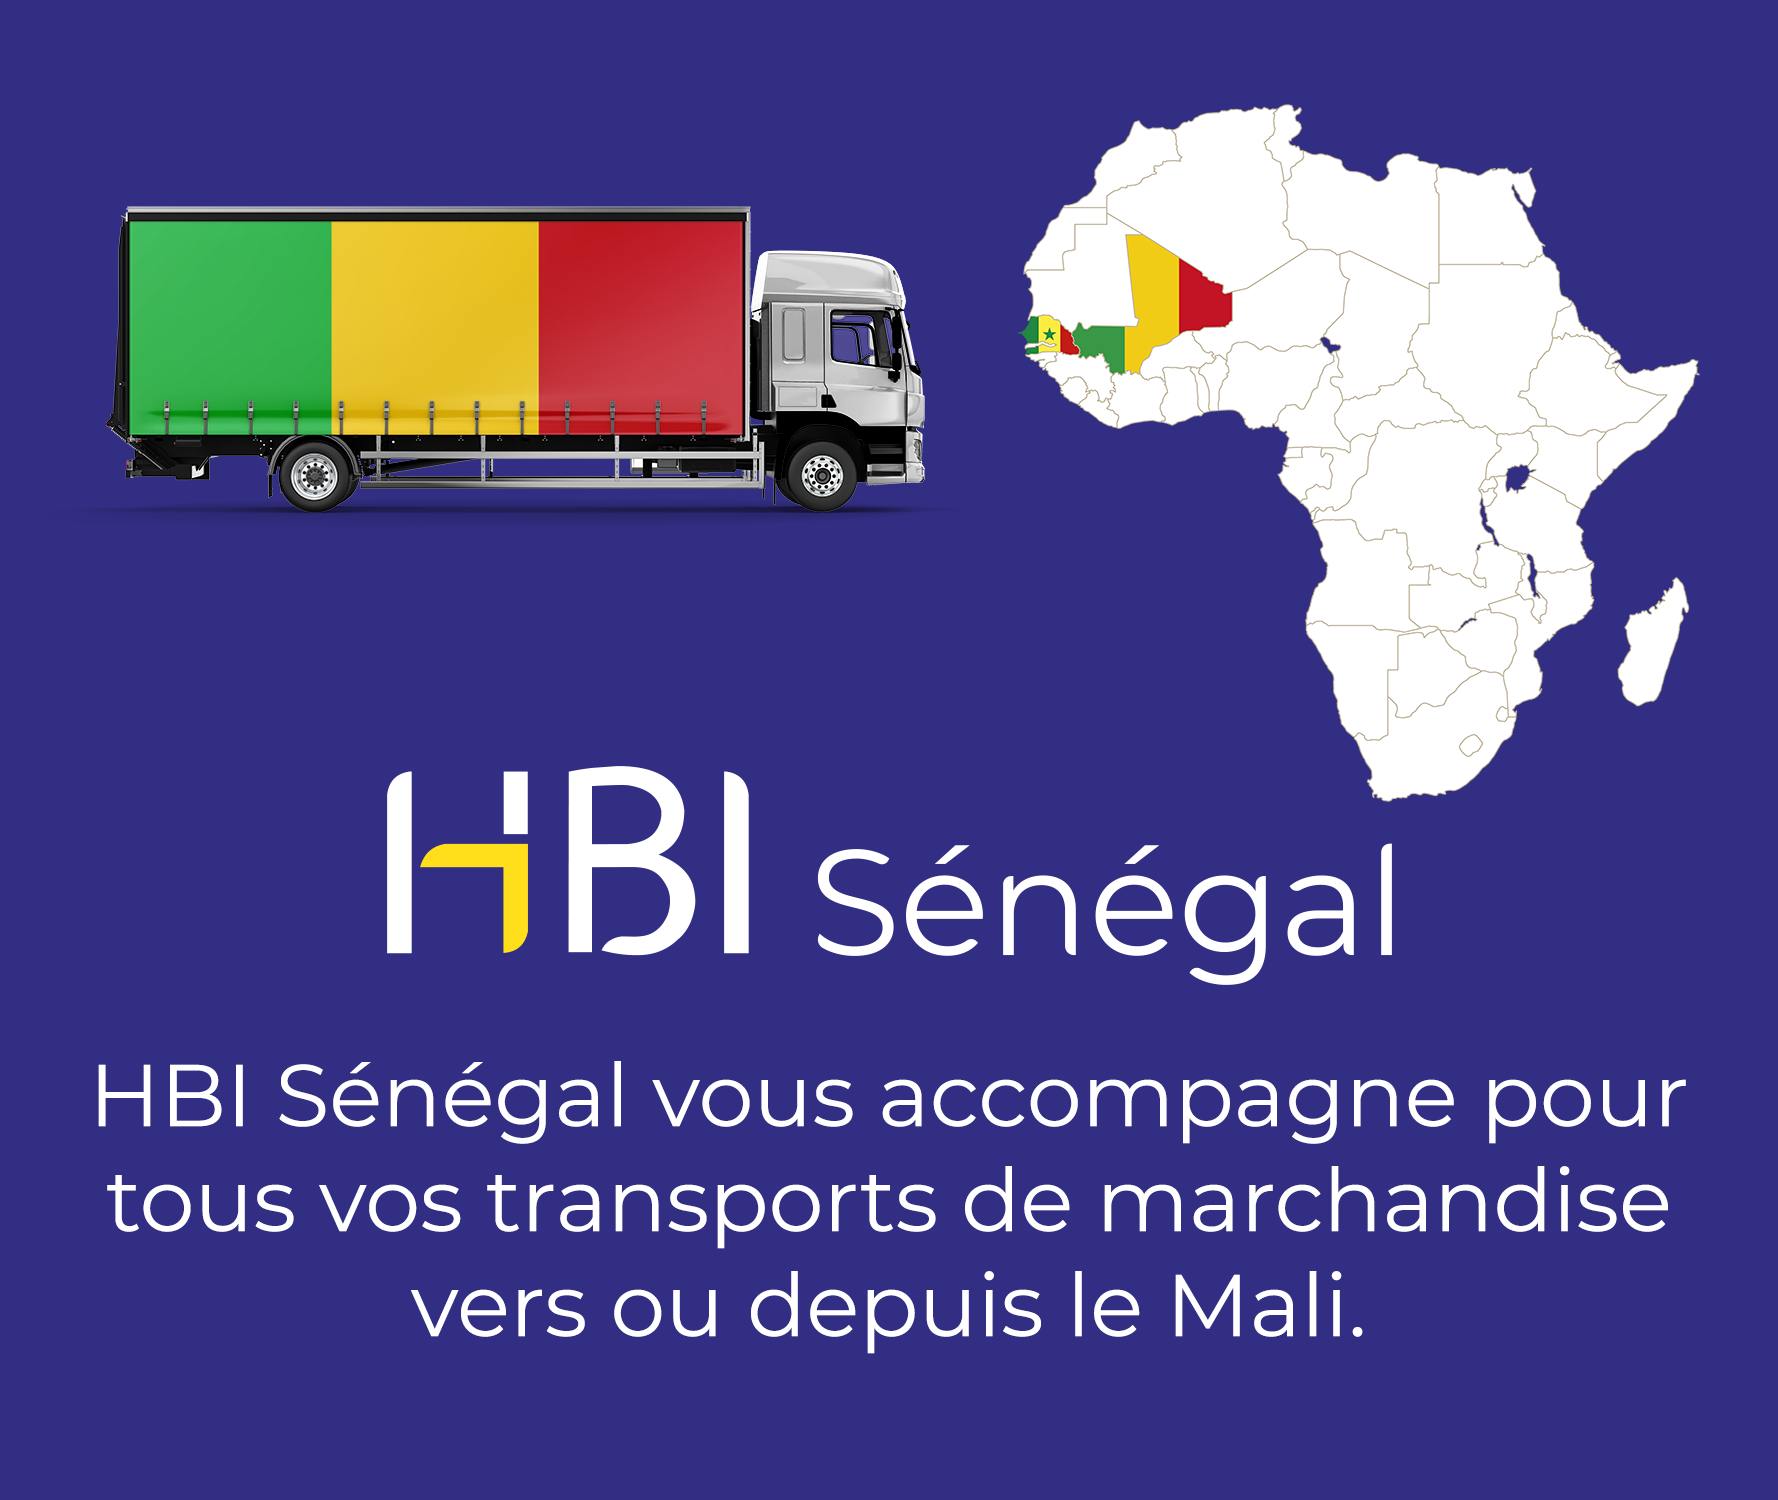 You are currently viewing HBI Senegal yakında Mali ile ticarete yeniden başlayacak. 🇸🇳 🇲🇱